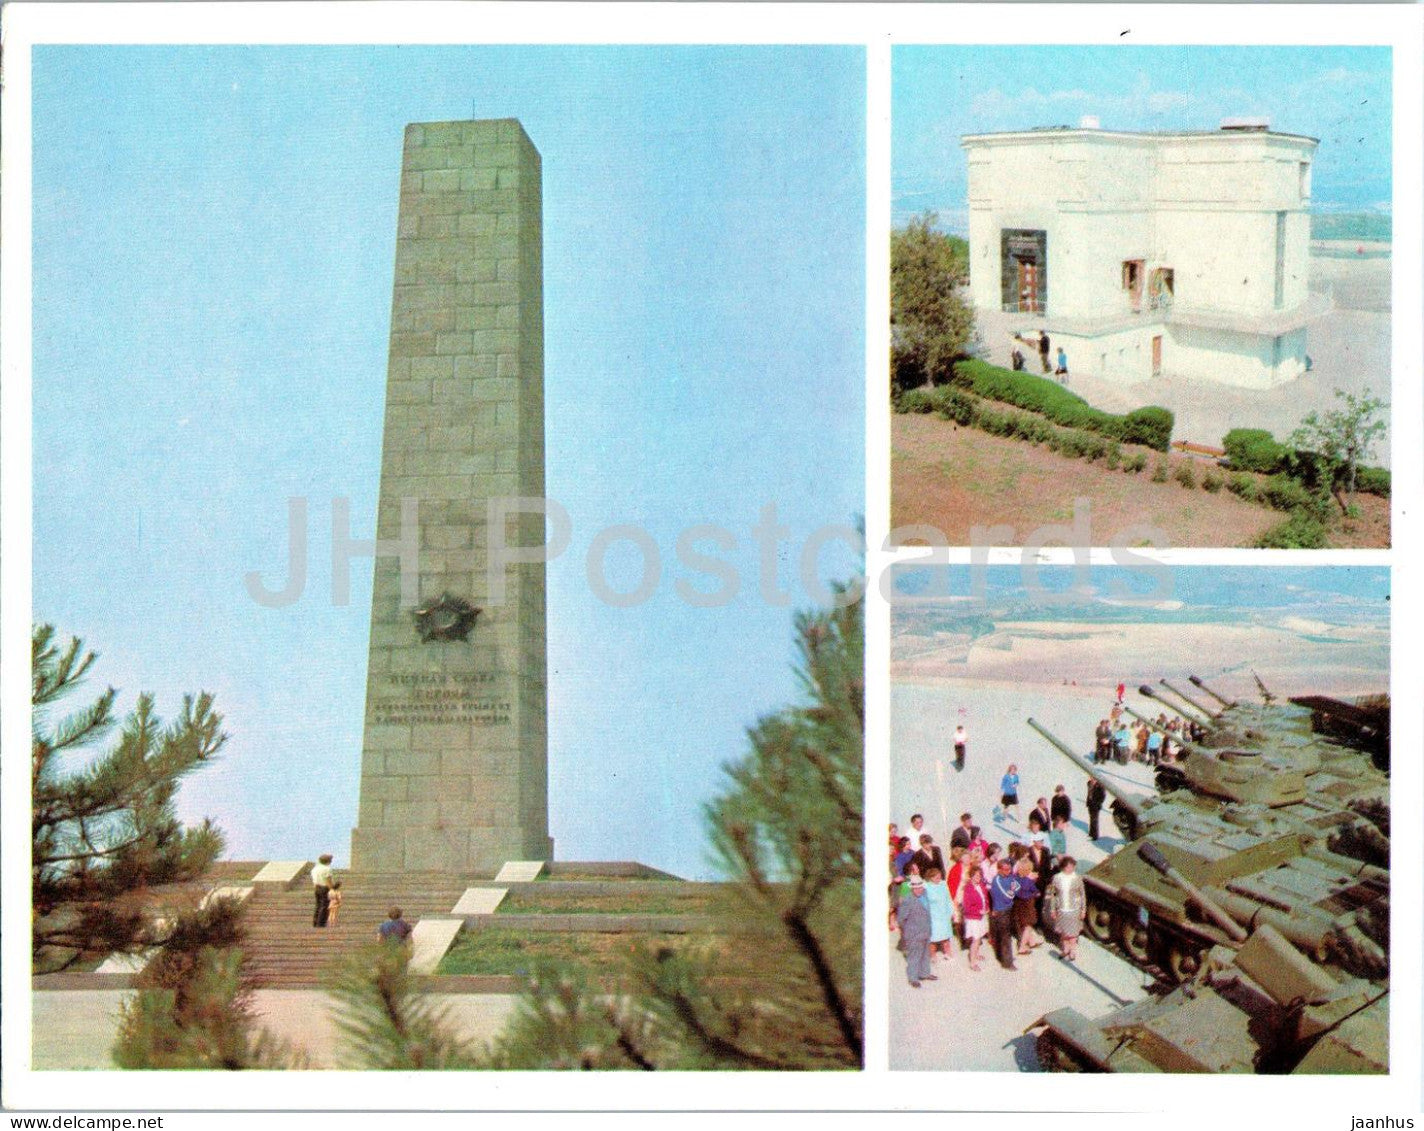 Sevastopol - The Victory monument - Diorama Museum - tank - Crimea - 1977 - Ukraine USSR - unused - JH Postcards